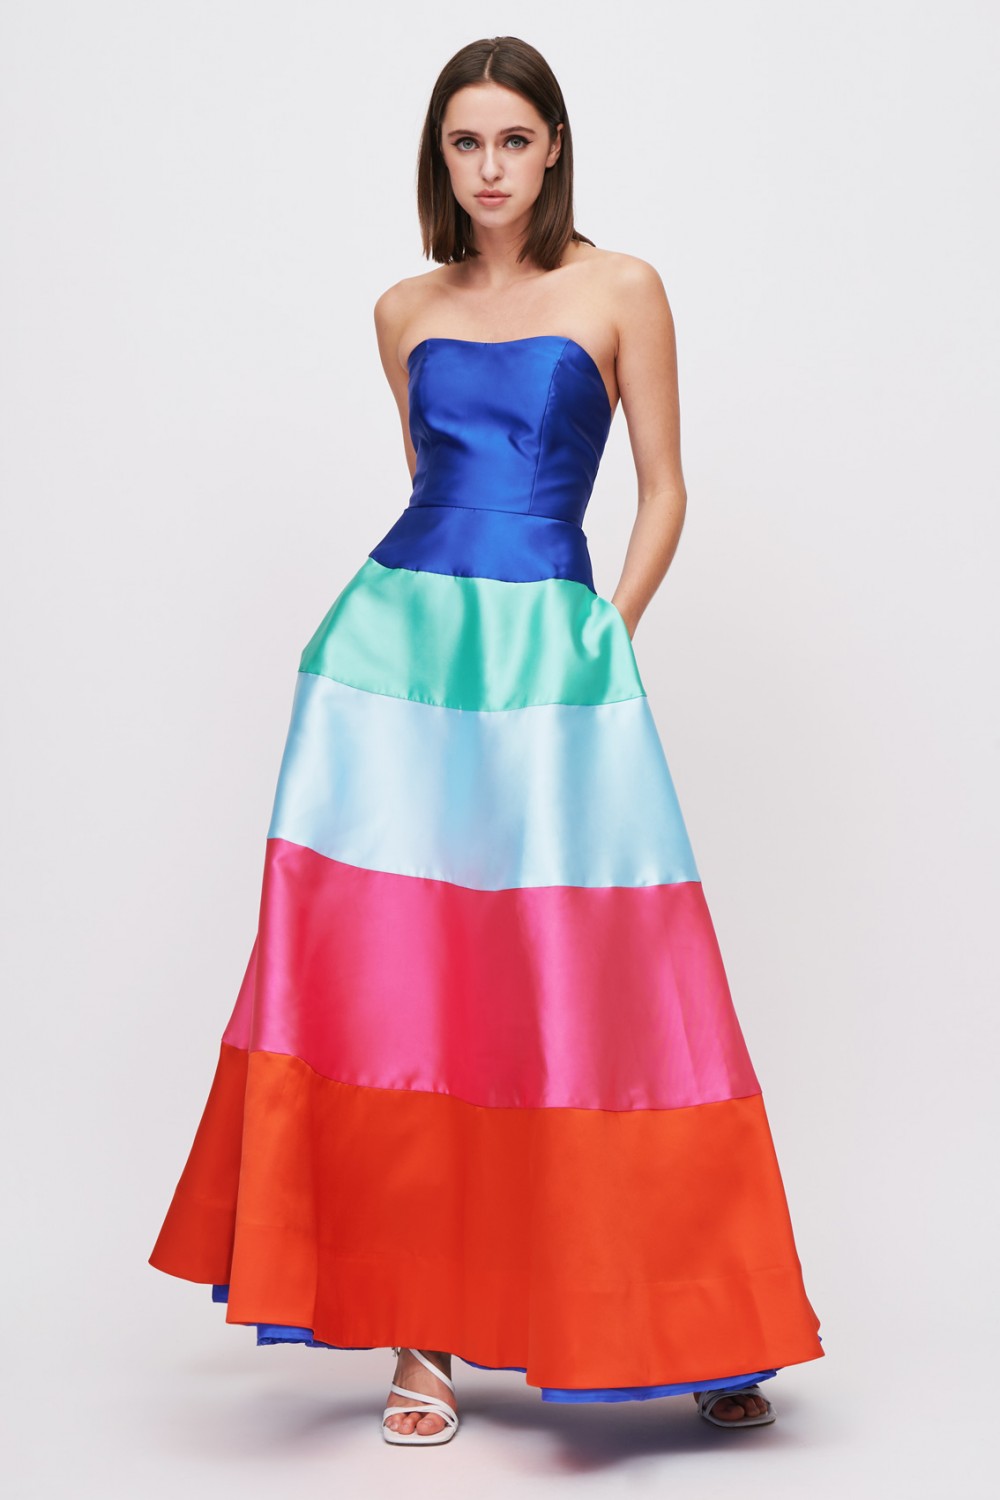 Color block dress